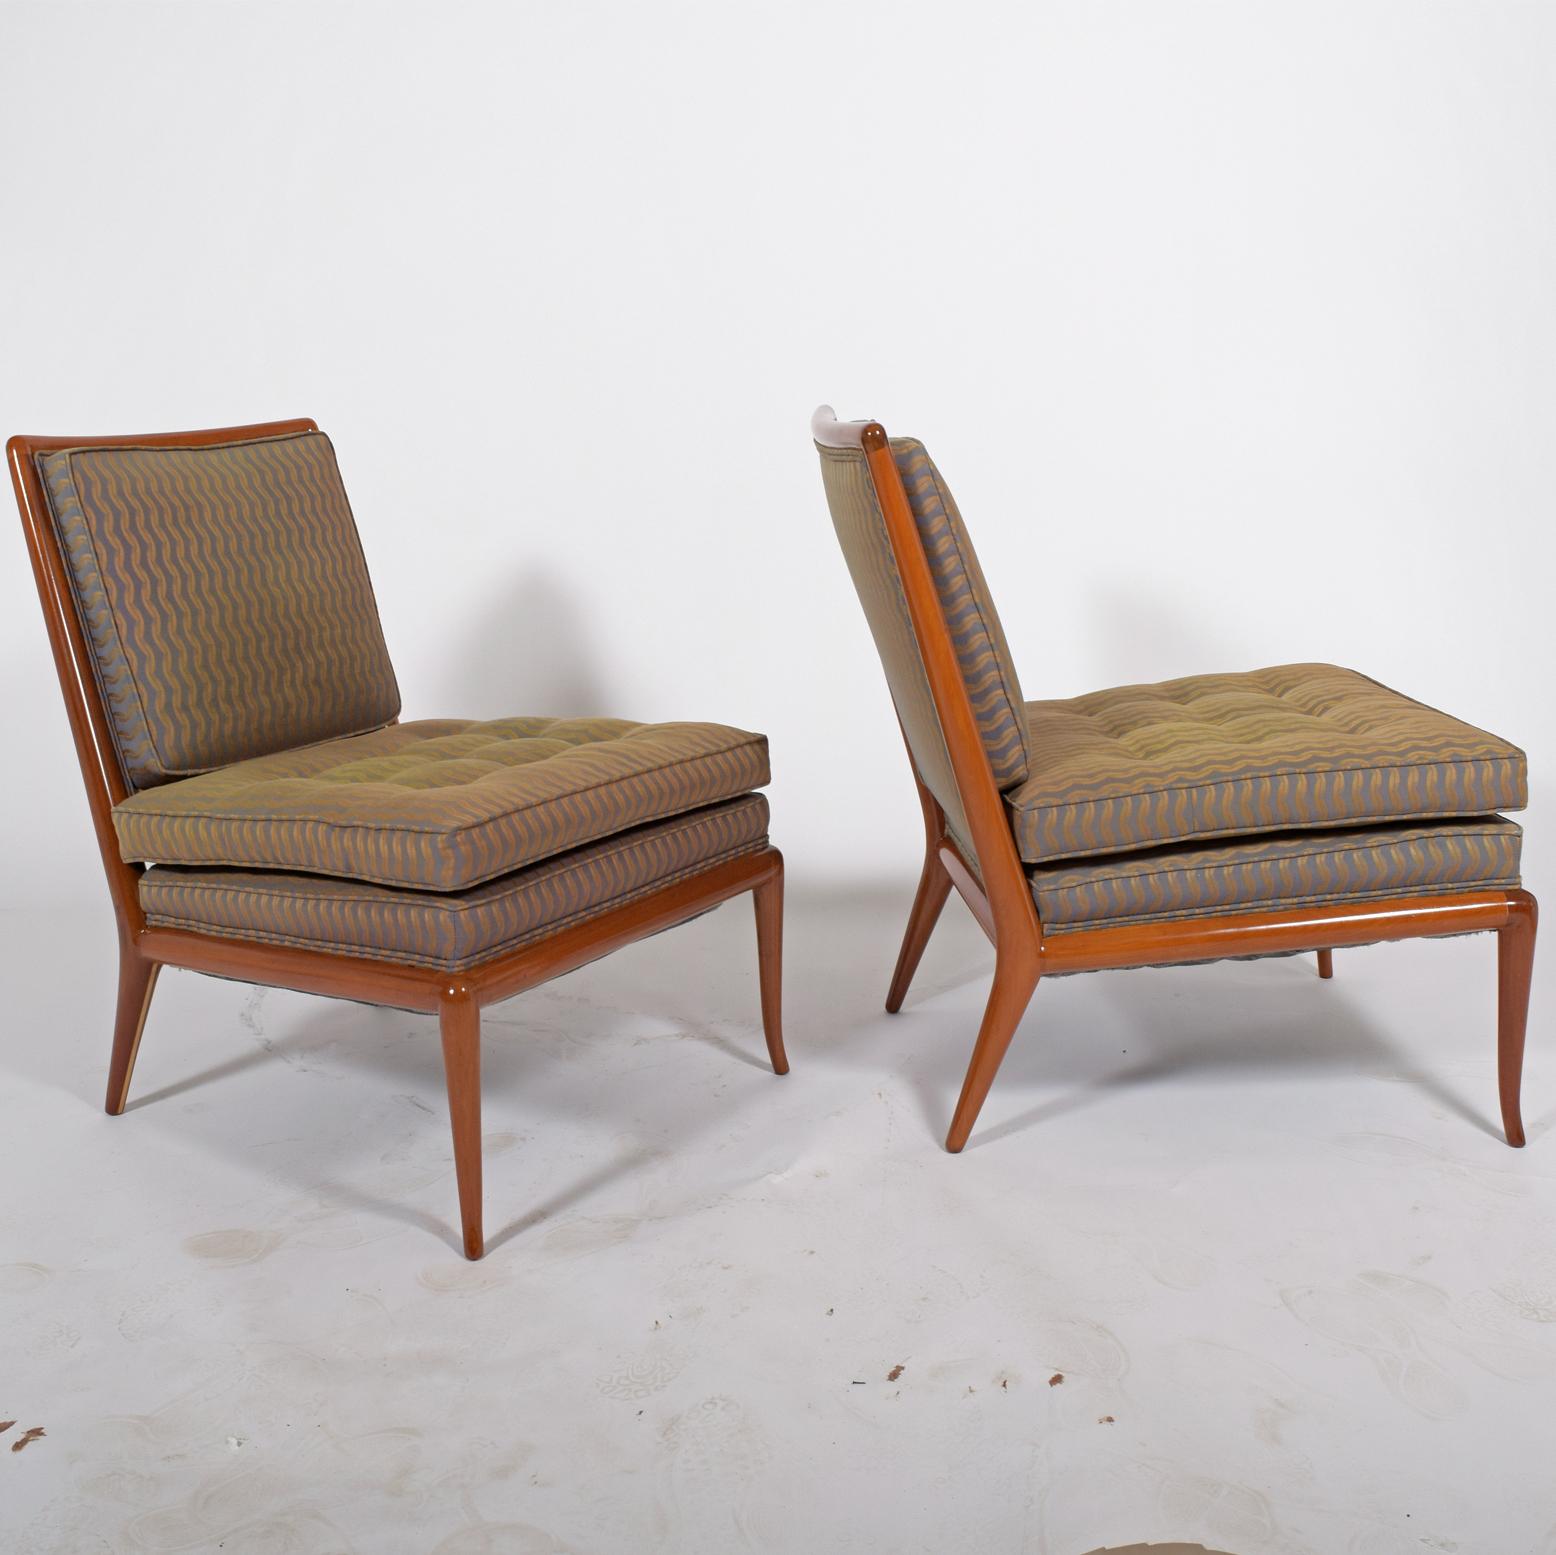 Modern T.H. Robsjohn-Gibbings Easy Chairs for Widdicomb Furniture Co.